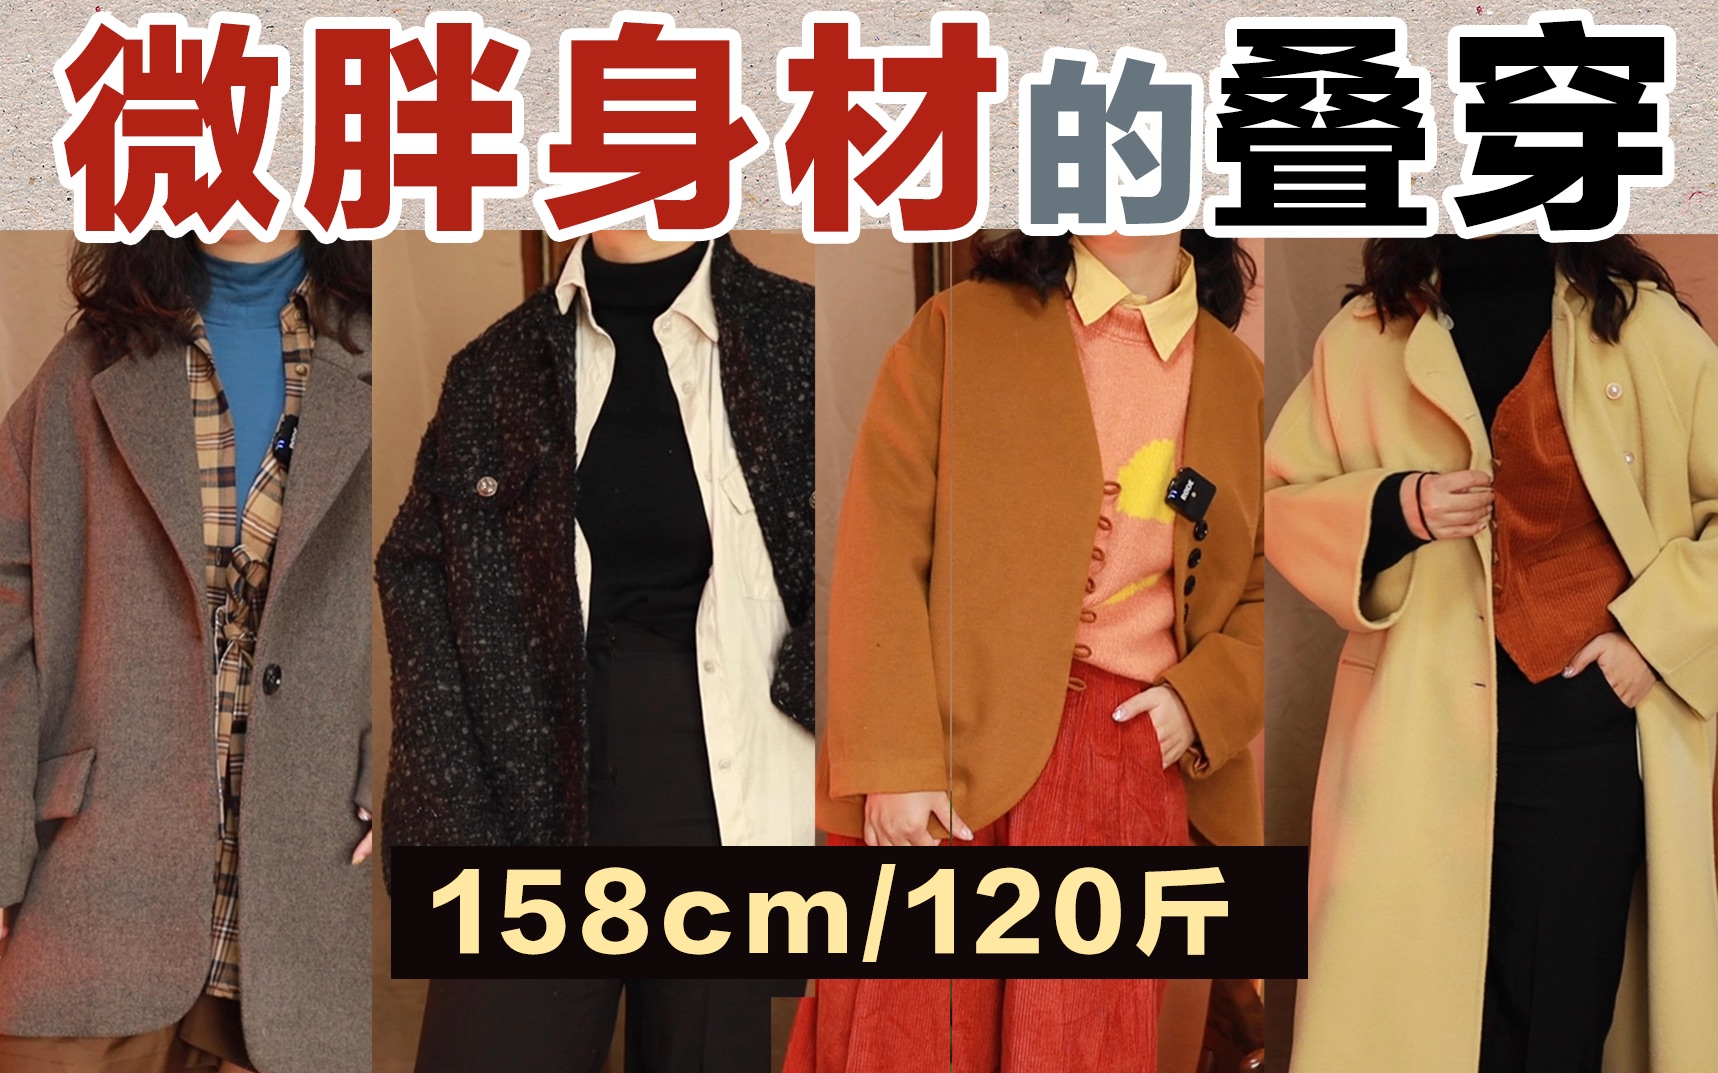 【158cm120斤】微胖女孩冬季叠穿公式 | 不挑身材的叠穿法则!